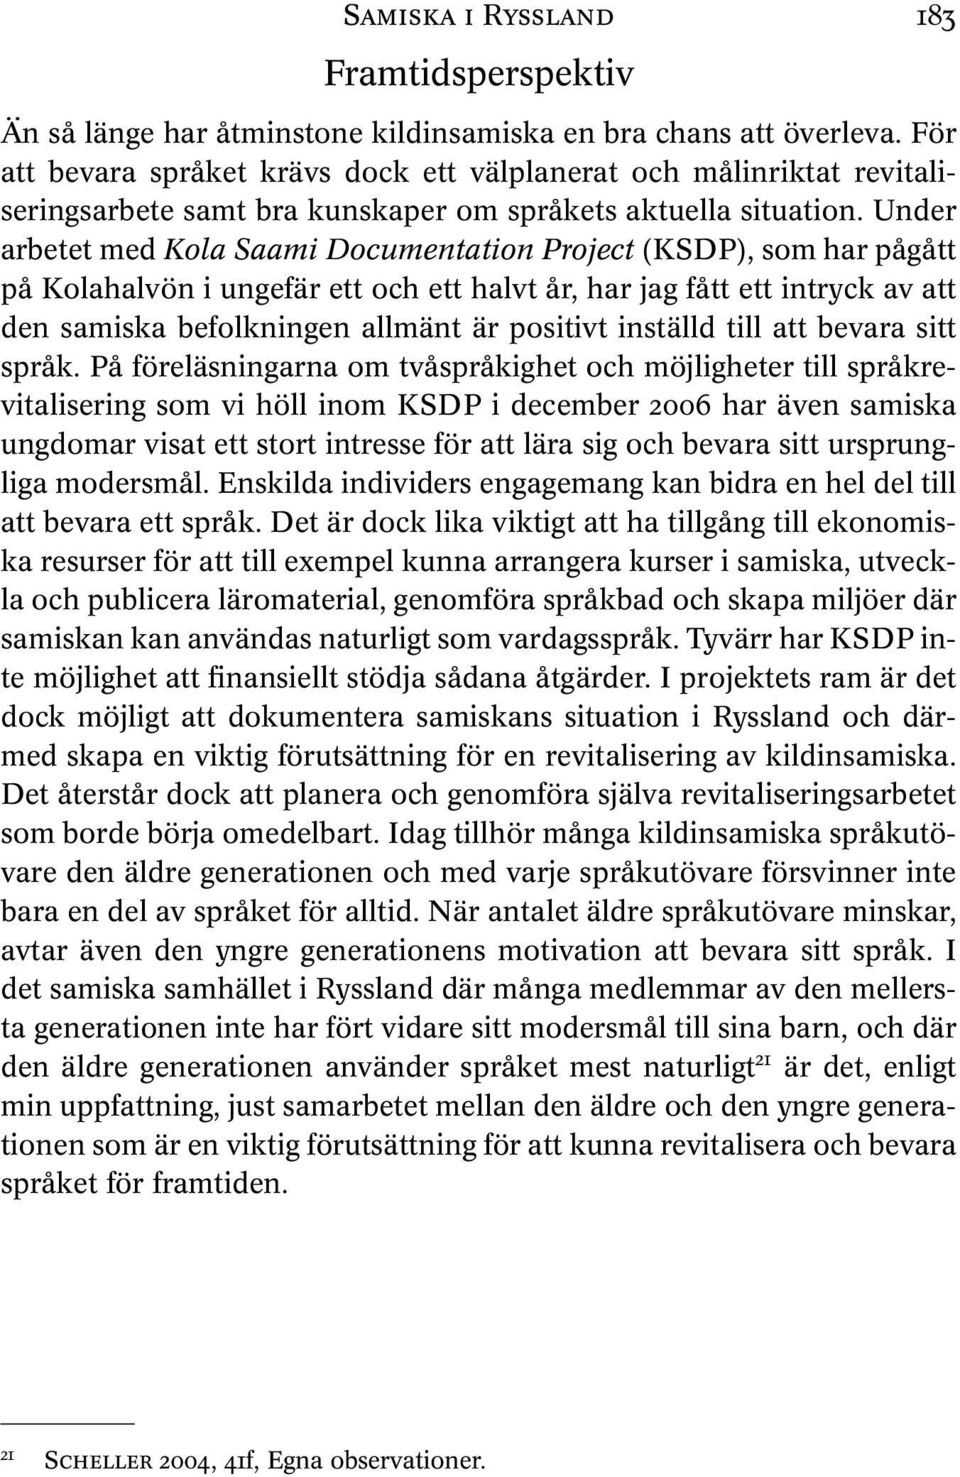 Under arbetet med Kola Saami Documentation Project (KSDP), som har pågått på Kolahalvön i ungefär ett och ett halvt år, har jag fått ett intryck av att den samiska befolkningen allmänt är positivt